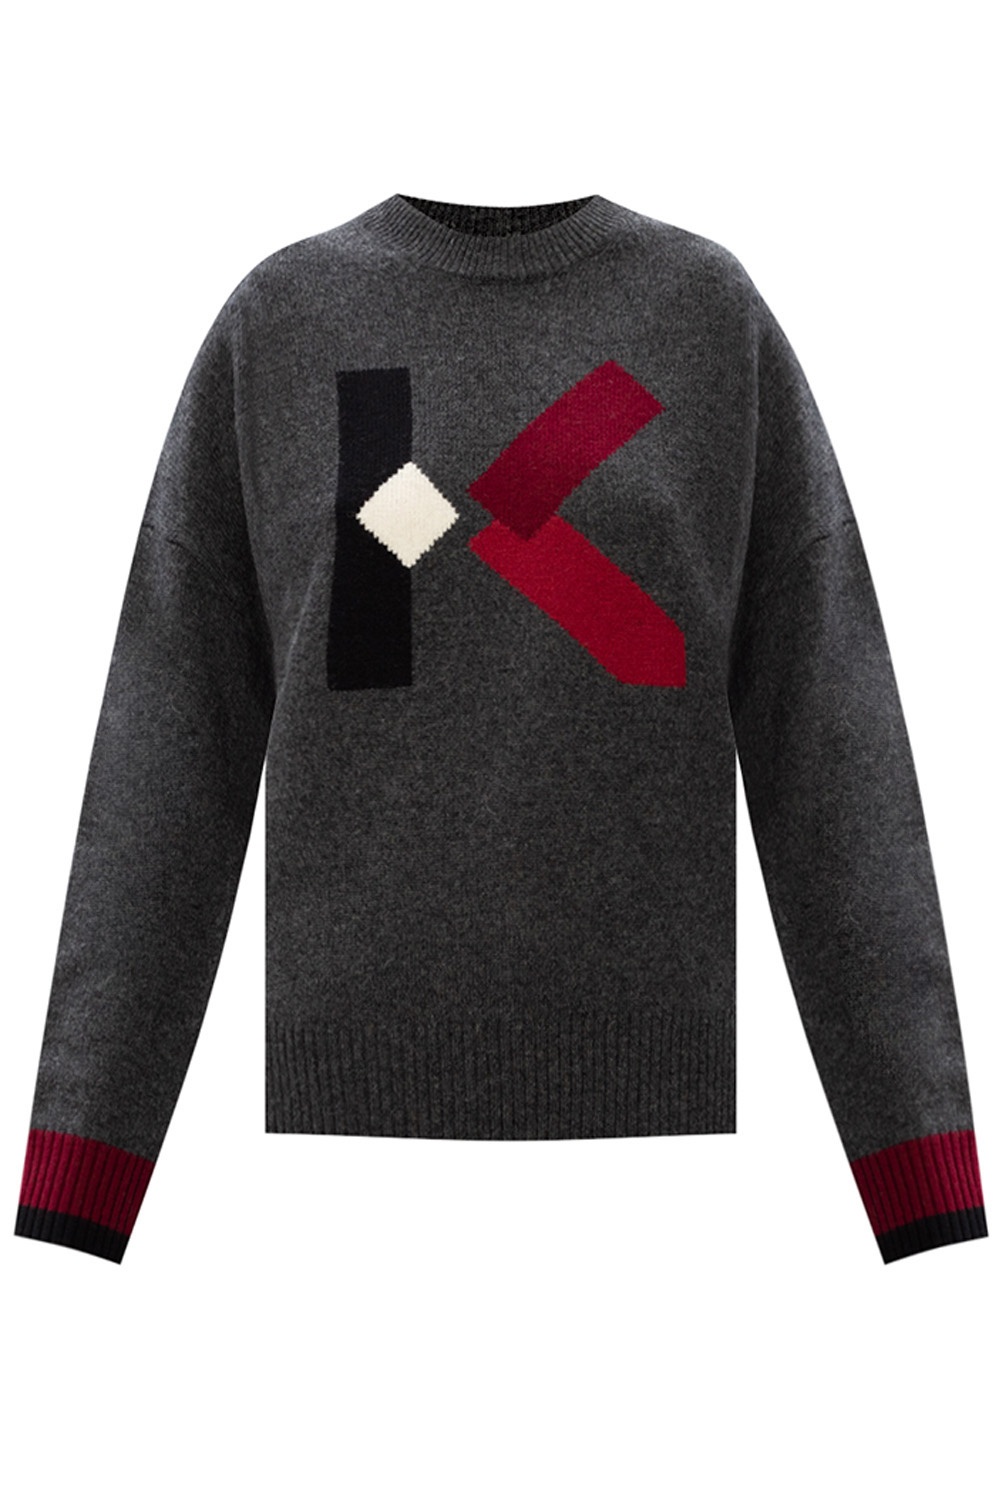 kenzo wool sweater